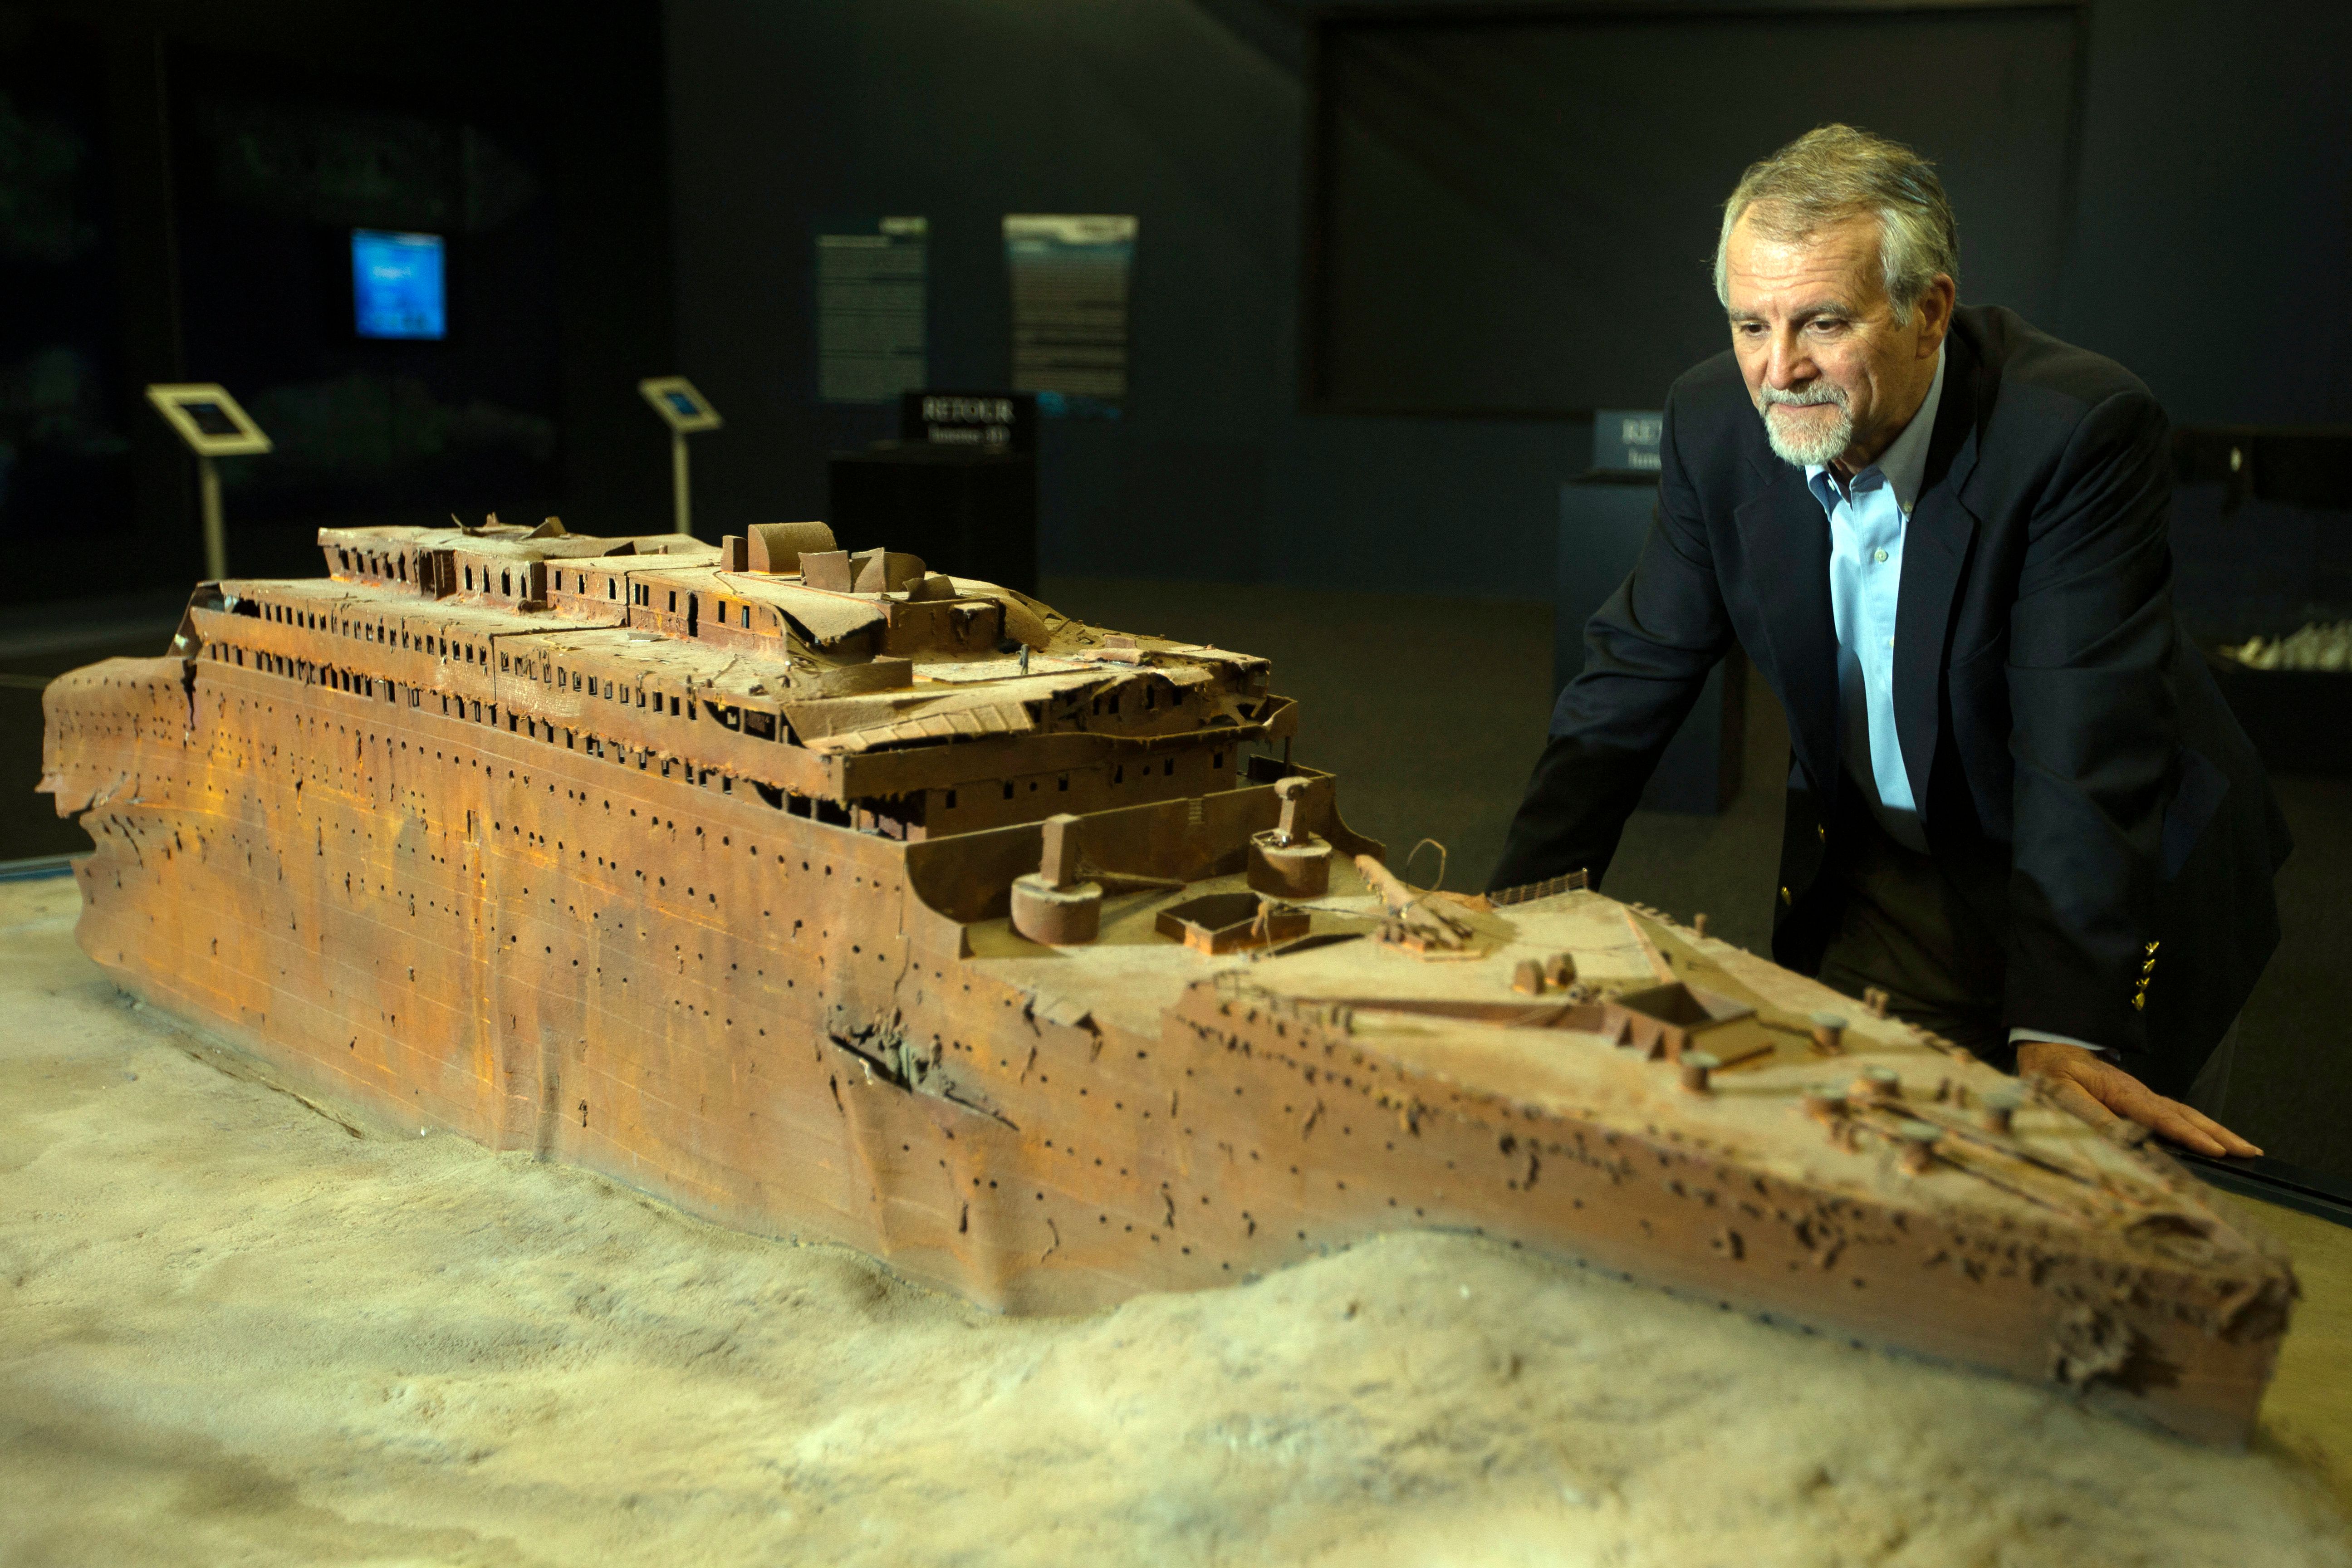 Paul-Henri Nargeolet mit einer Miniaturversion des gesunkenen Schiffes in einer neuen Ausstellung auf der Paris Expo am 31. Mai 2013 in Paris. | Quelle: Getty Images